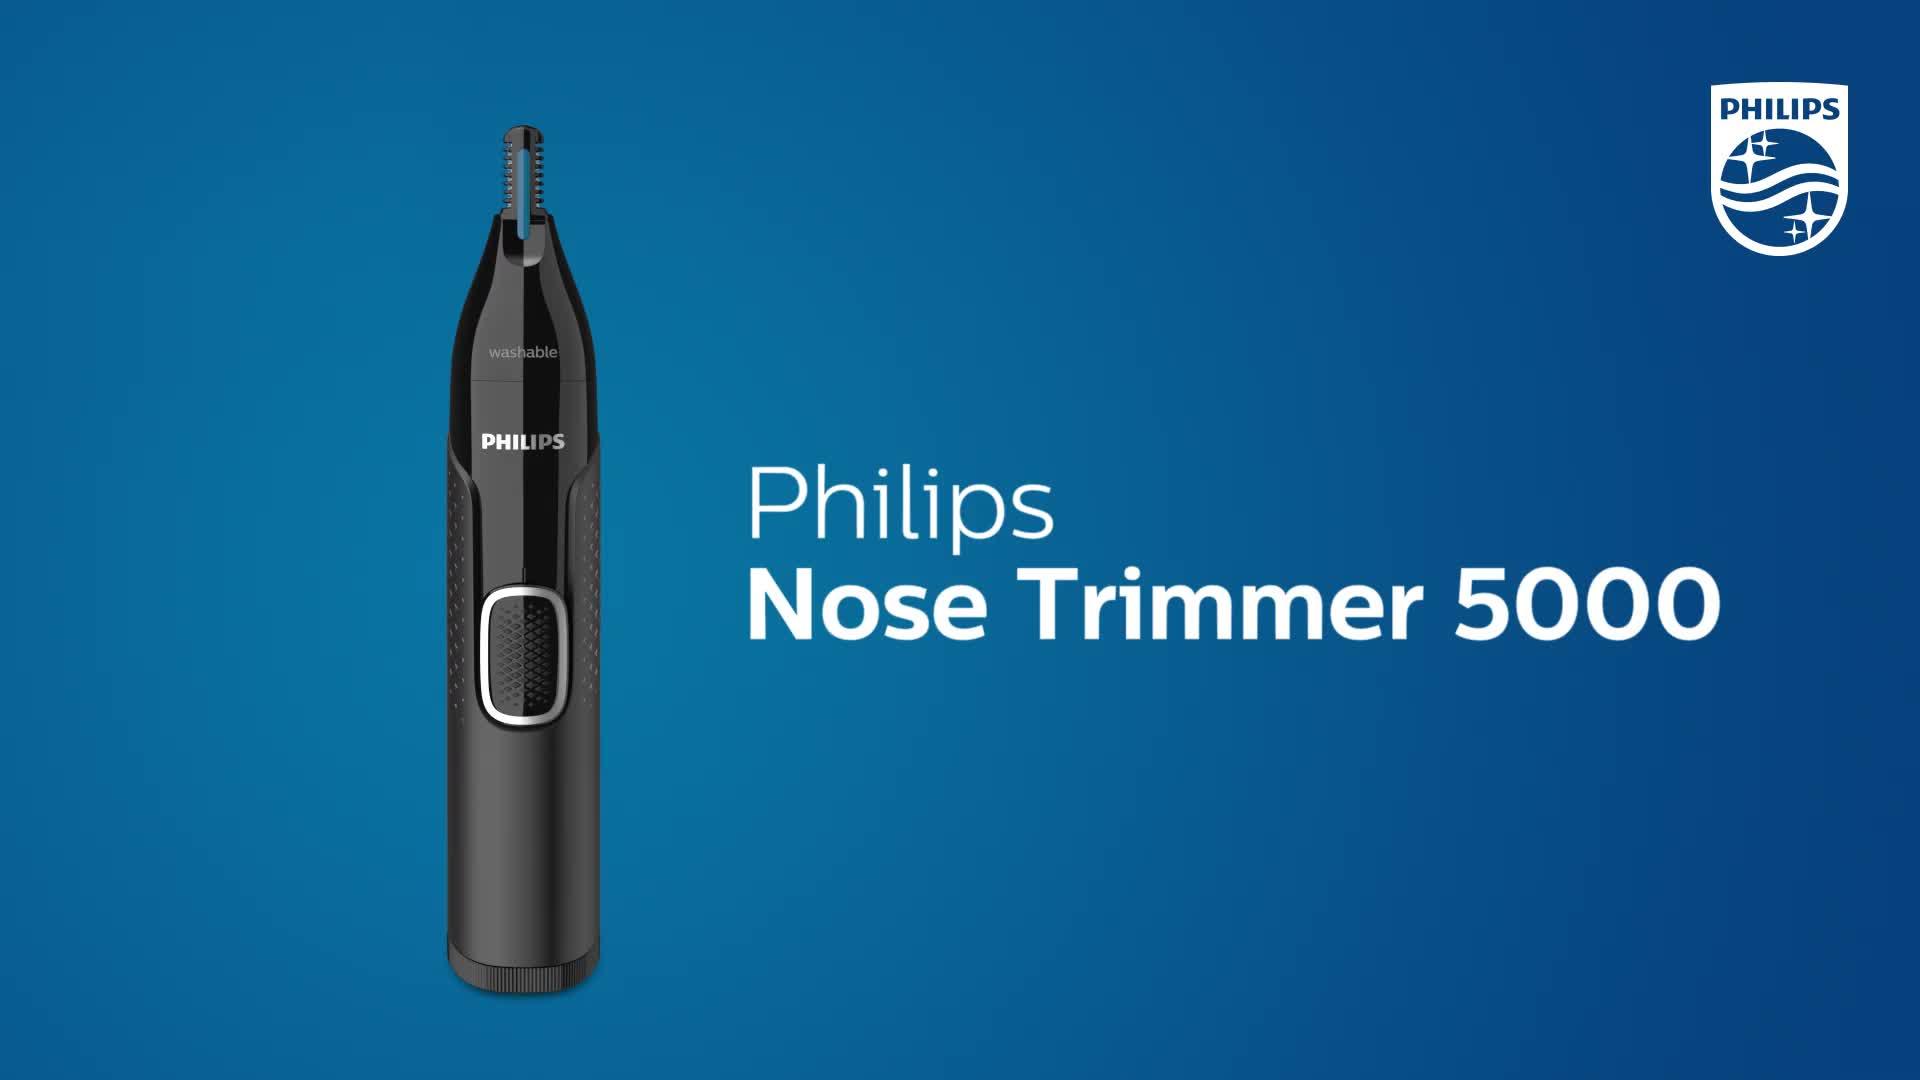 philip nose trimmer